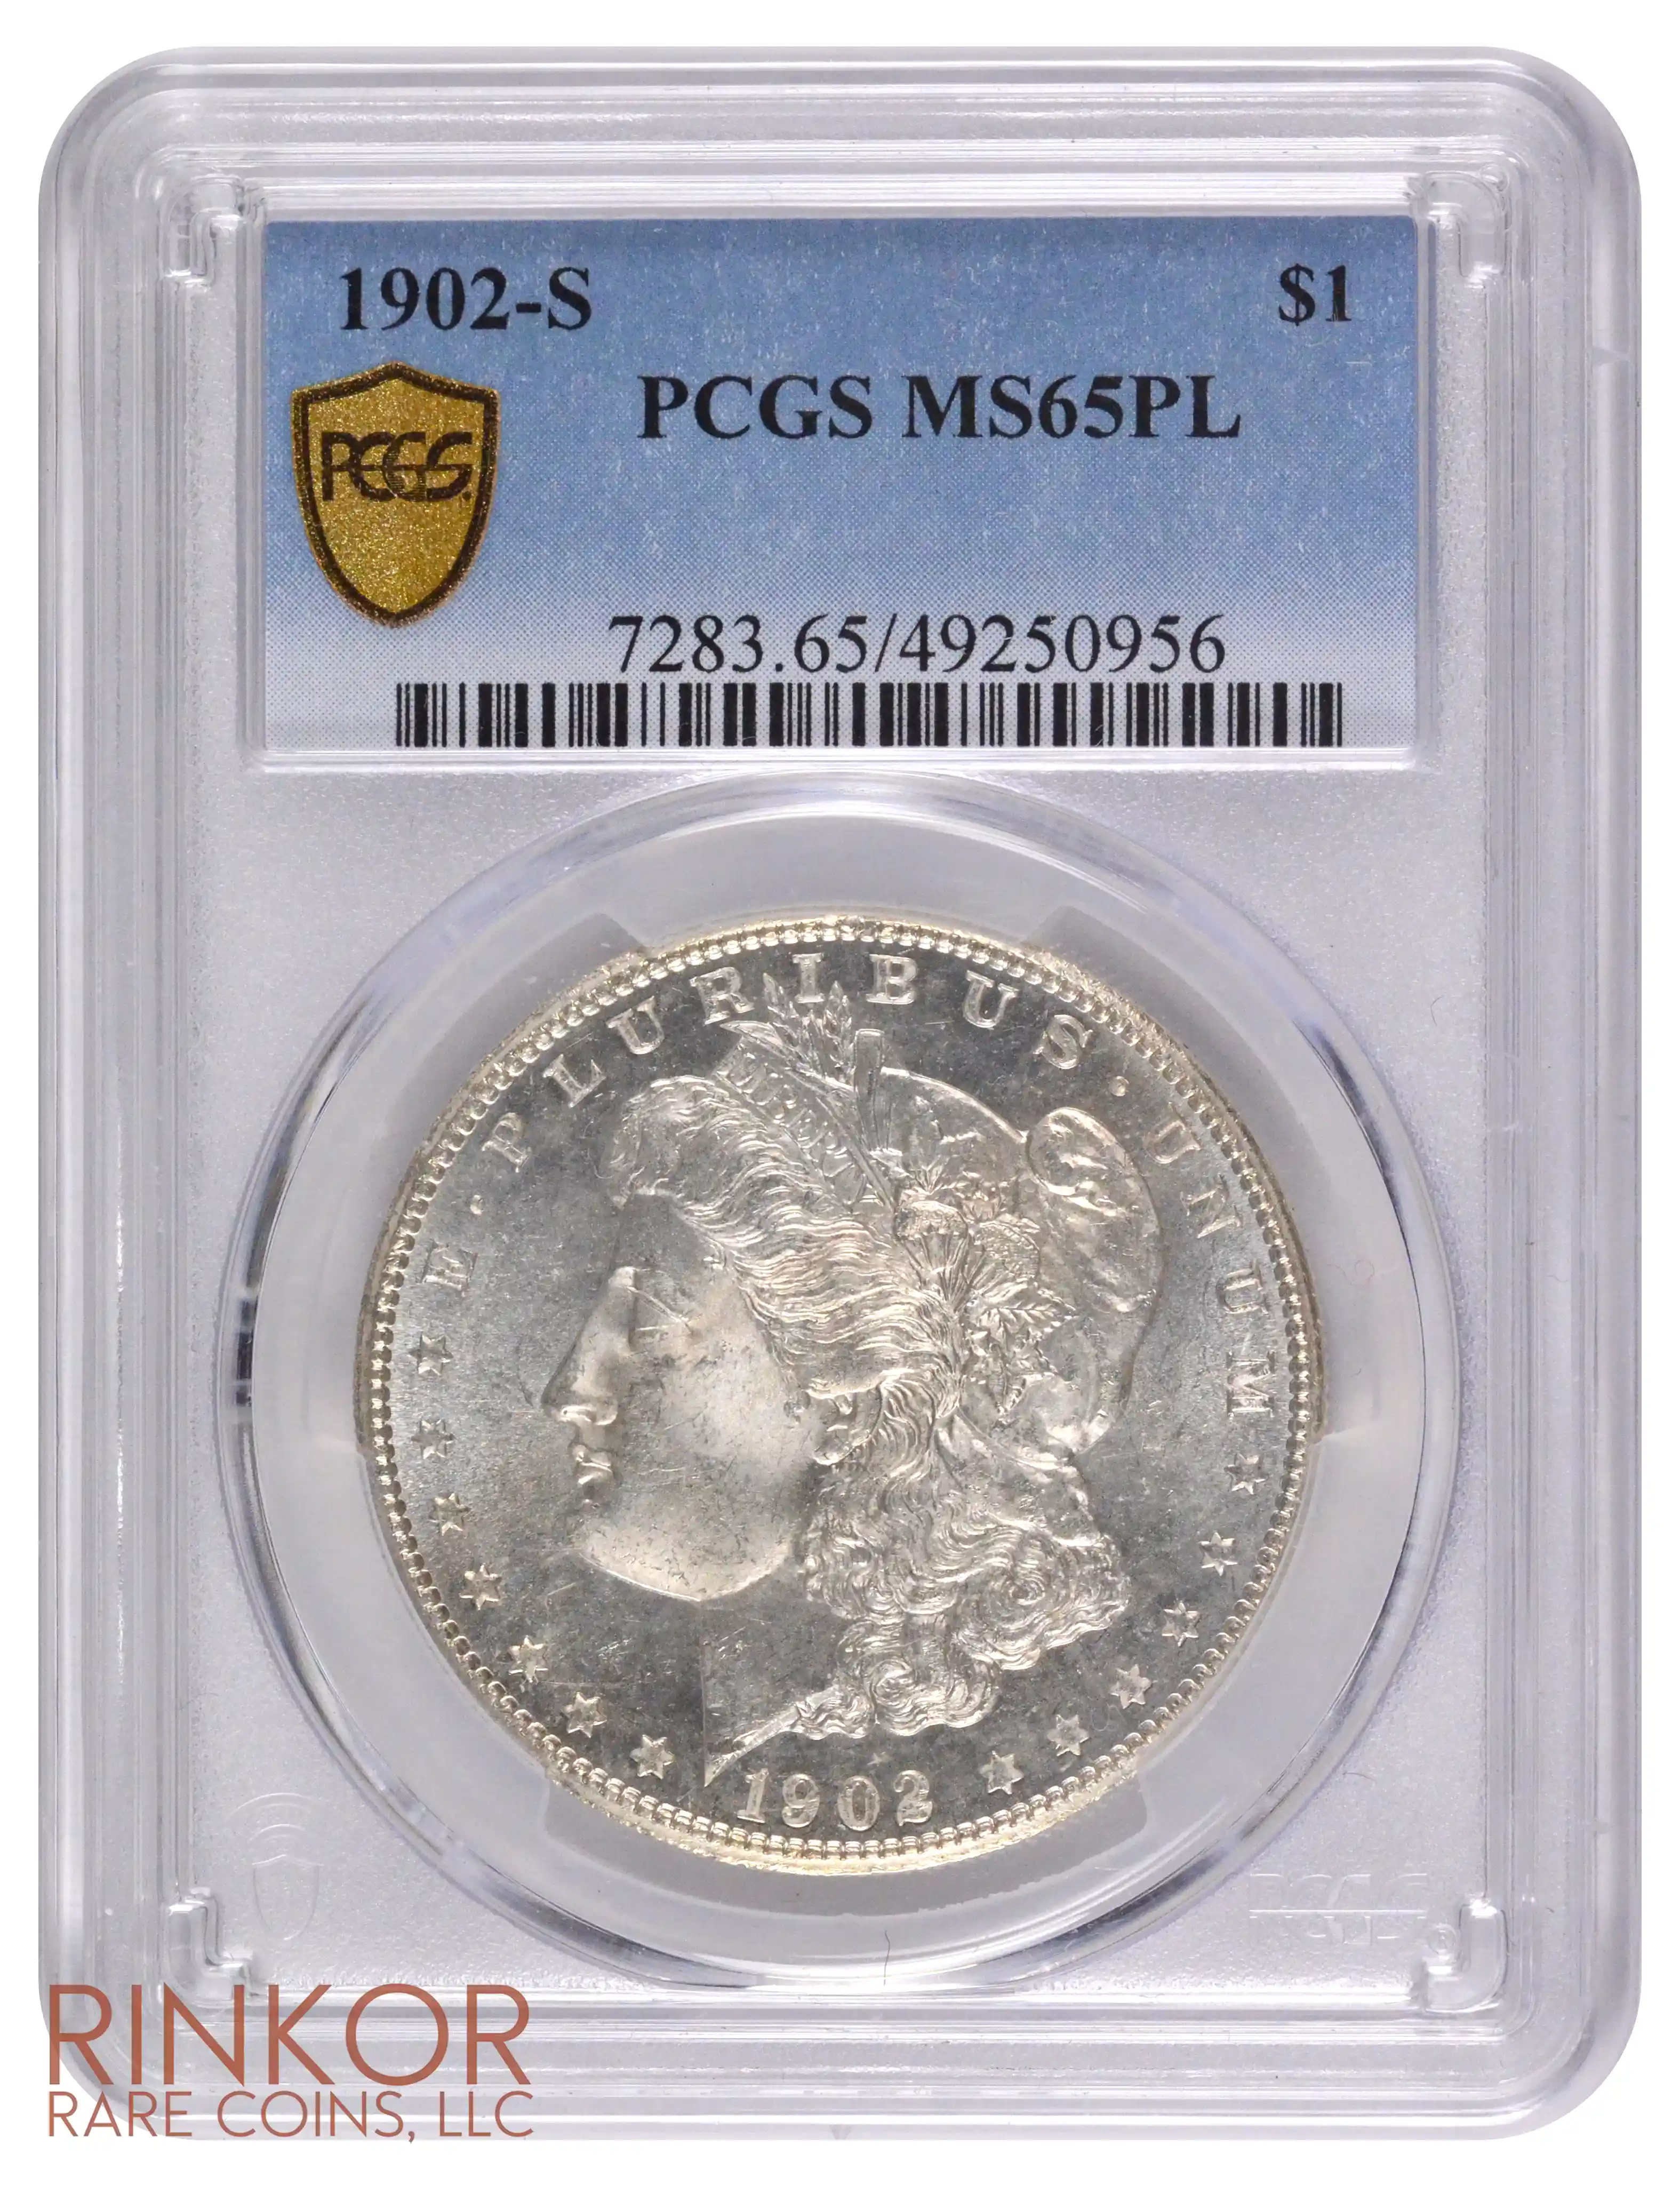 1902-S $1 PCGS MS 65 PL